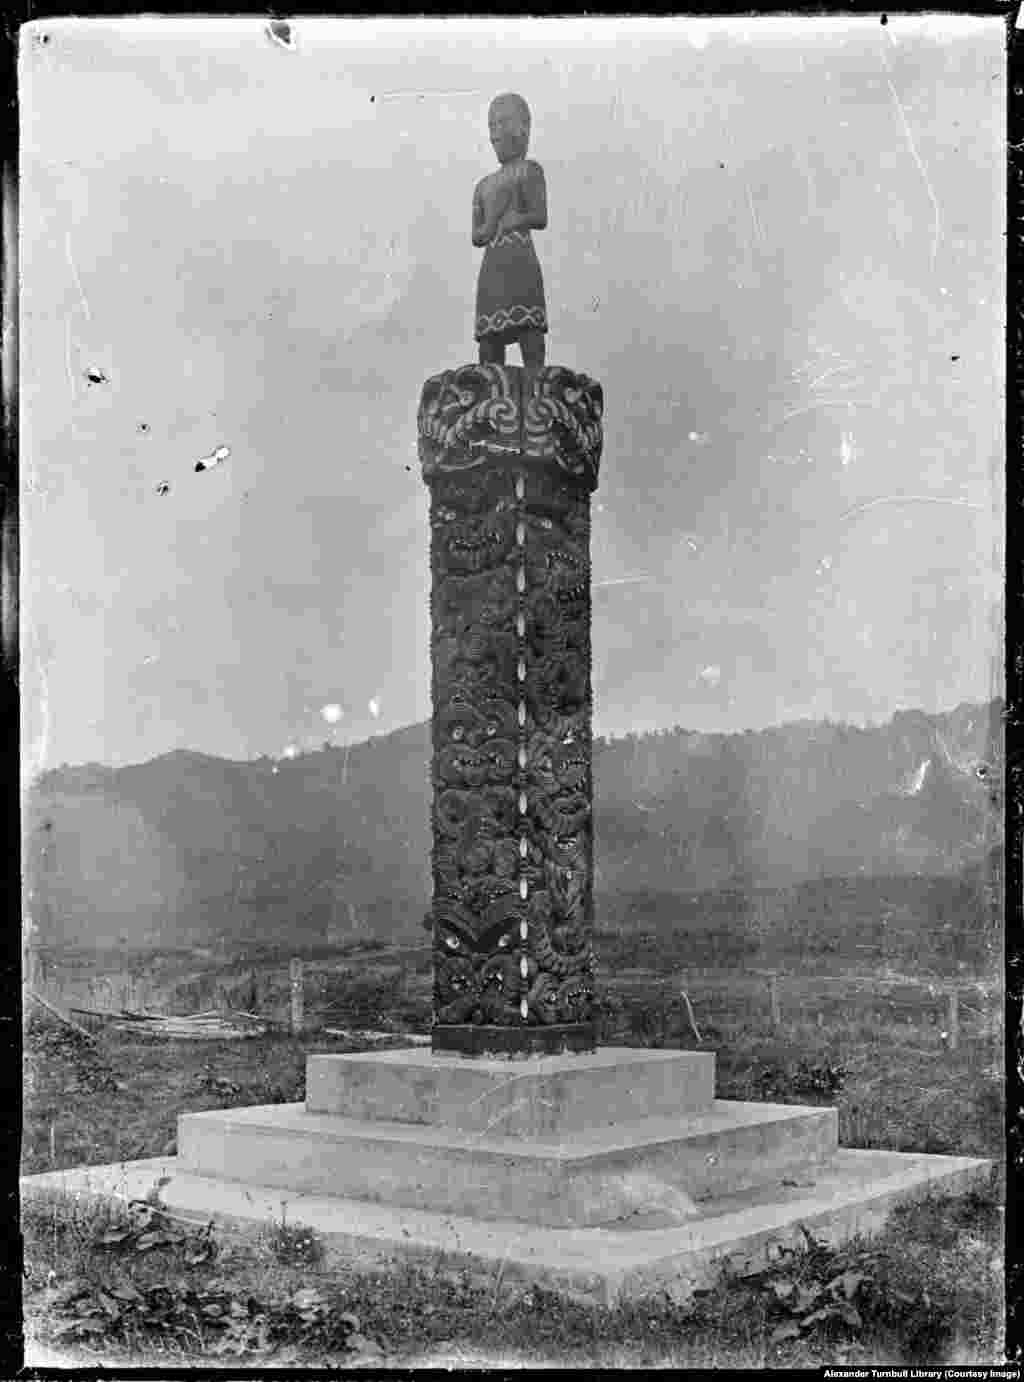 Un memorial maori pentru victimele virusului din Noua Zeelandă Din Noua Zeelandă, boala s-a răspândit în Samoa,o insulă din Pacific, unde a ucis 22% din întreaga populație, de 38.000, în decurs de două luni. În Iran, se estimează că până la 2,4 milioane - care ar fi fost mai mult de 20 la sută din populația țării - au murit. Aproximativ 300.000 de oameni au fost uciși de pandemie în Brazilia, inclusiv președintele ales al țării. &nbsp;